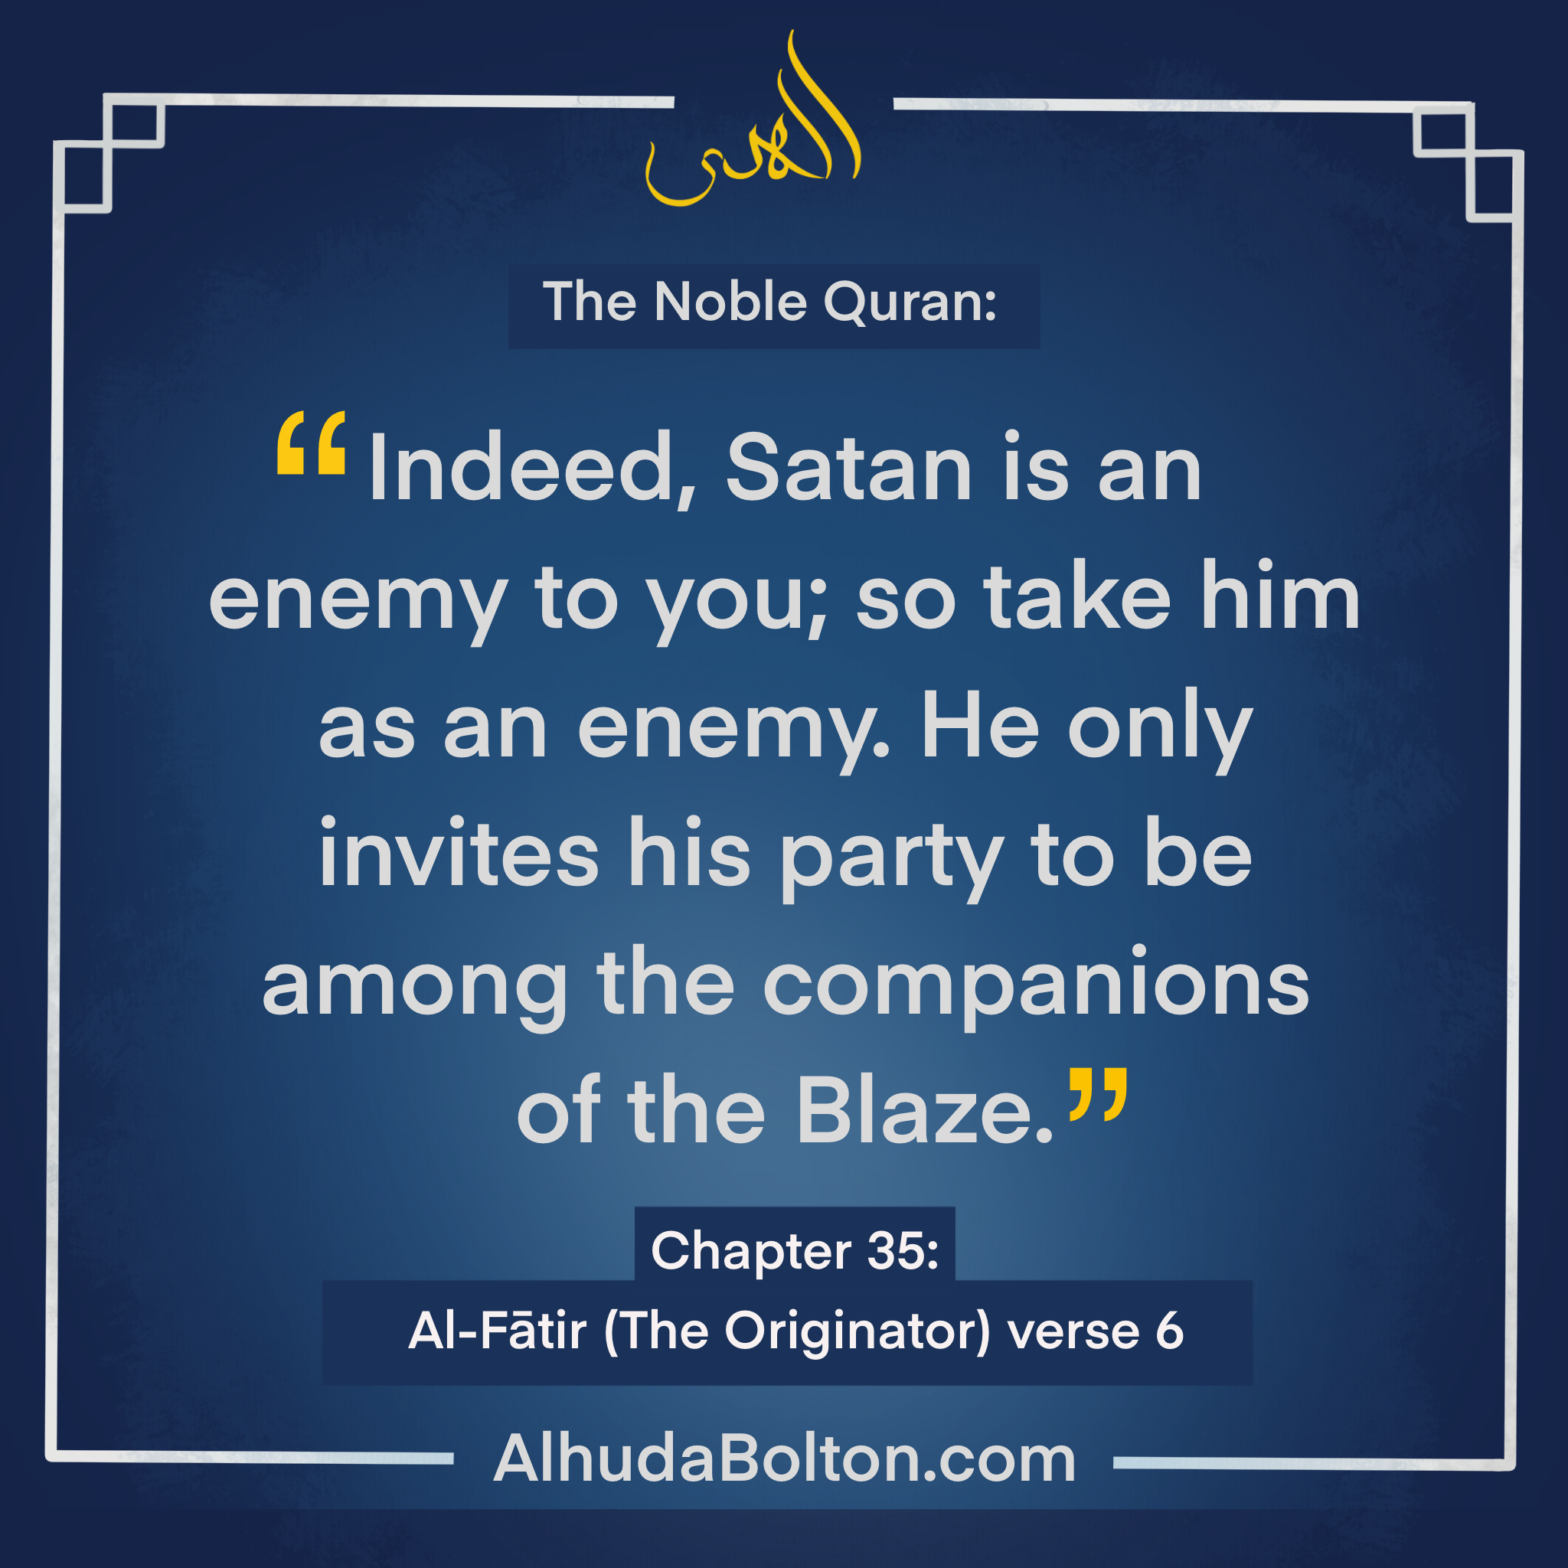 Quran: “so take him as an enemy”